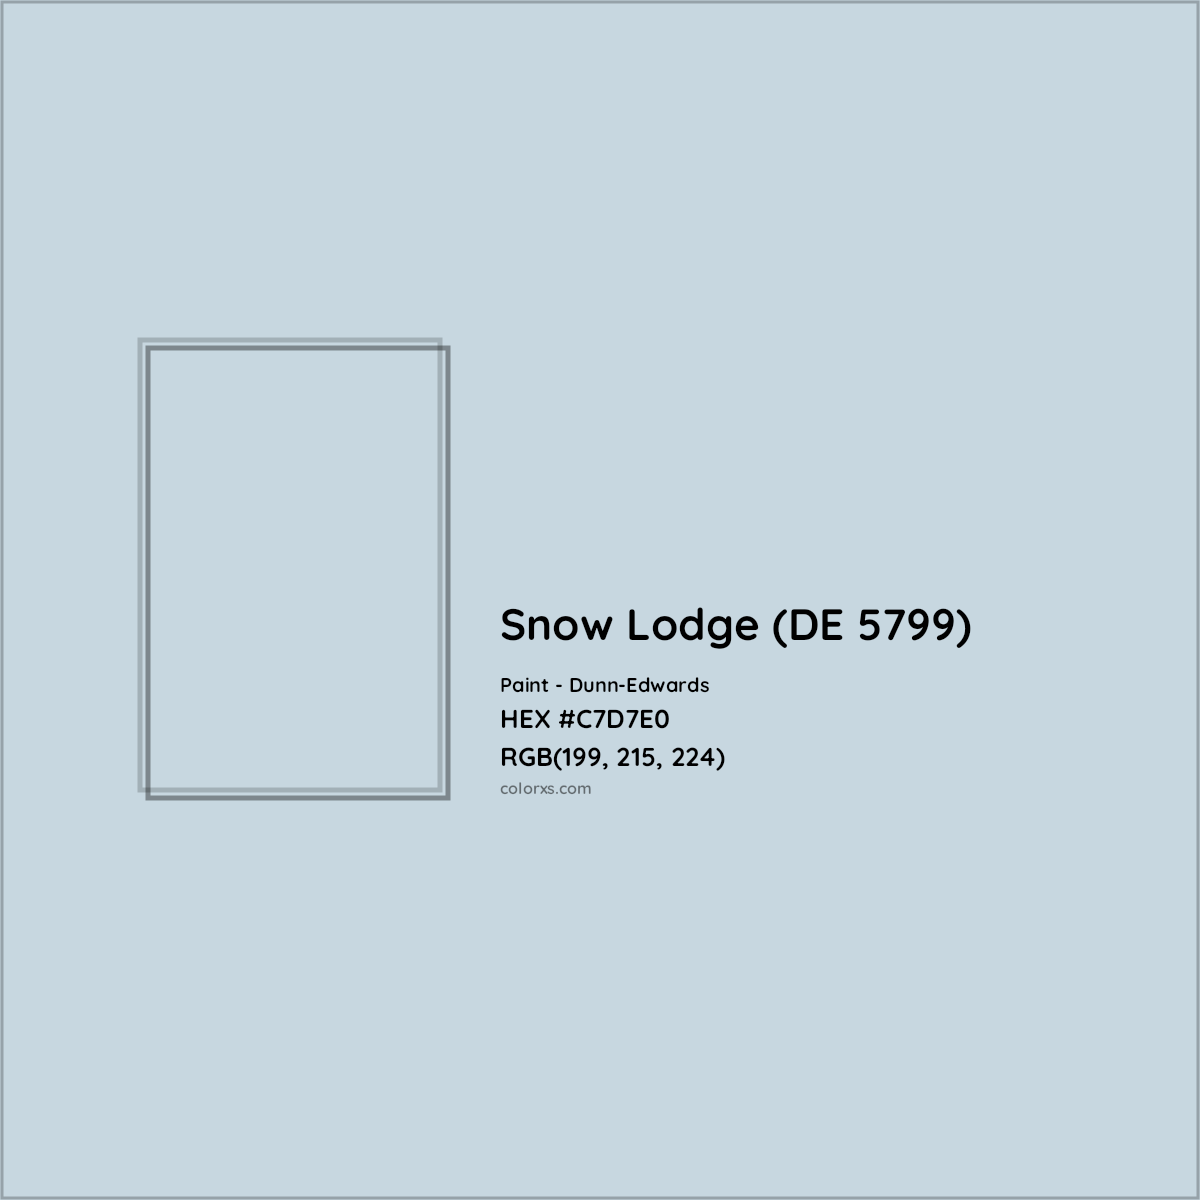 HEX #C7D7E0 Snow Lodge (DE 5799) Paint Dunn-Edwards - Color Code